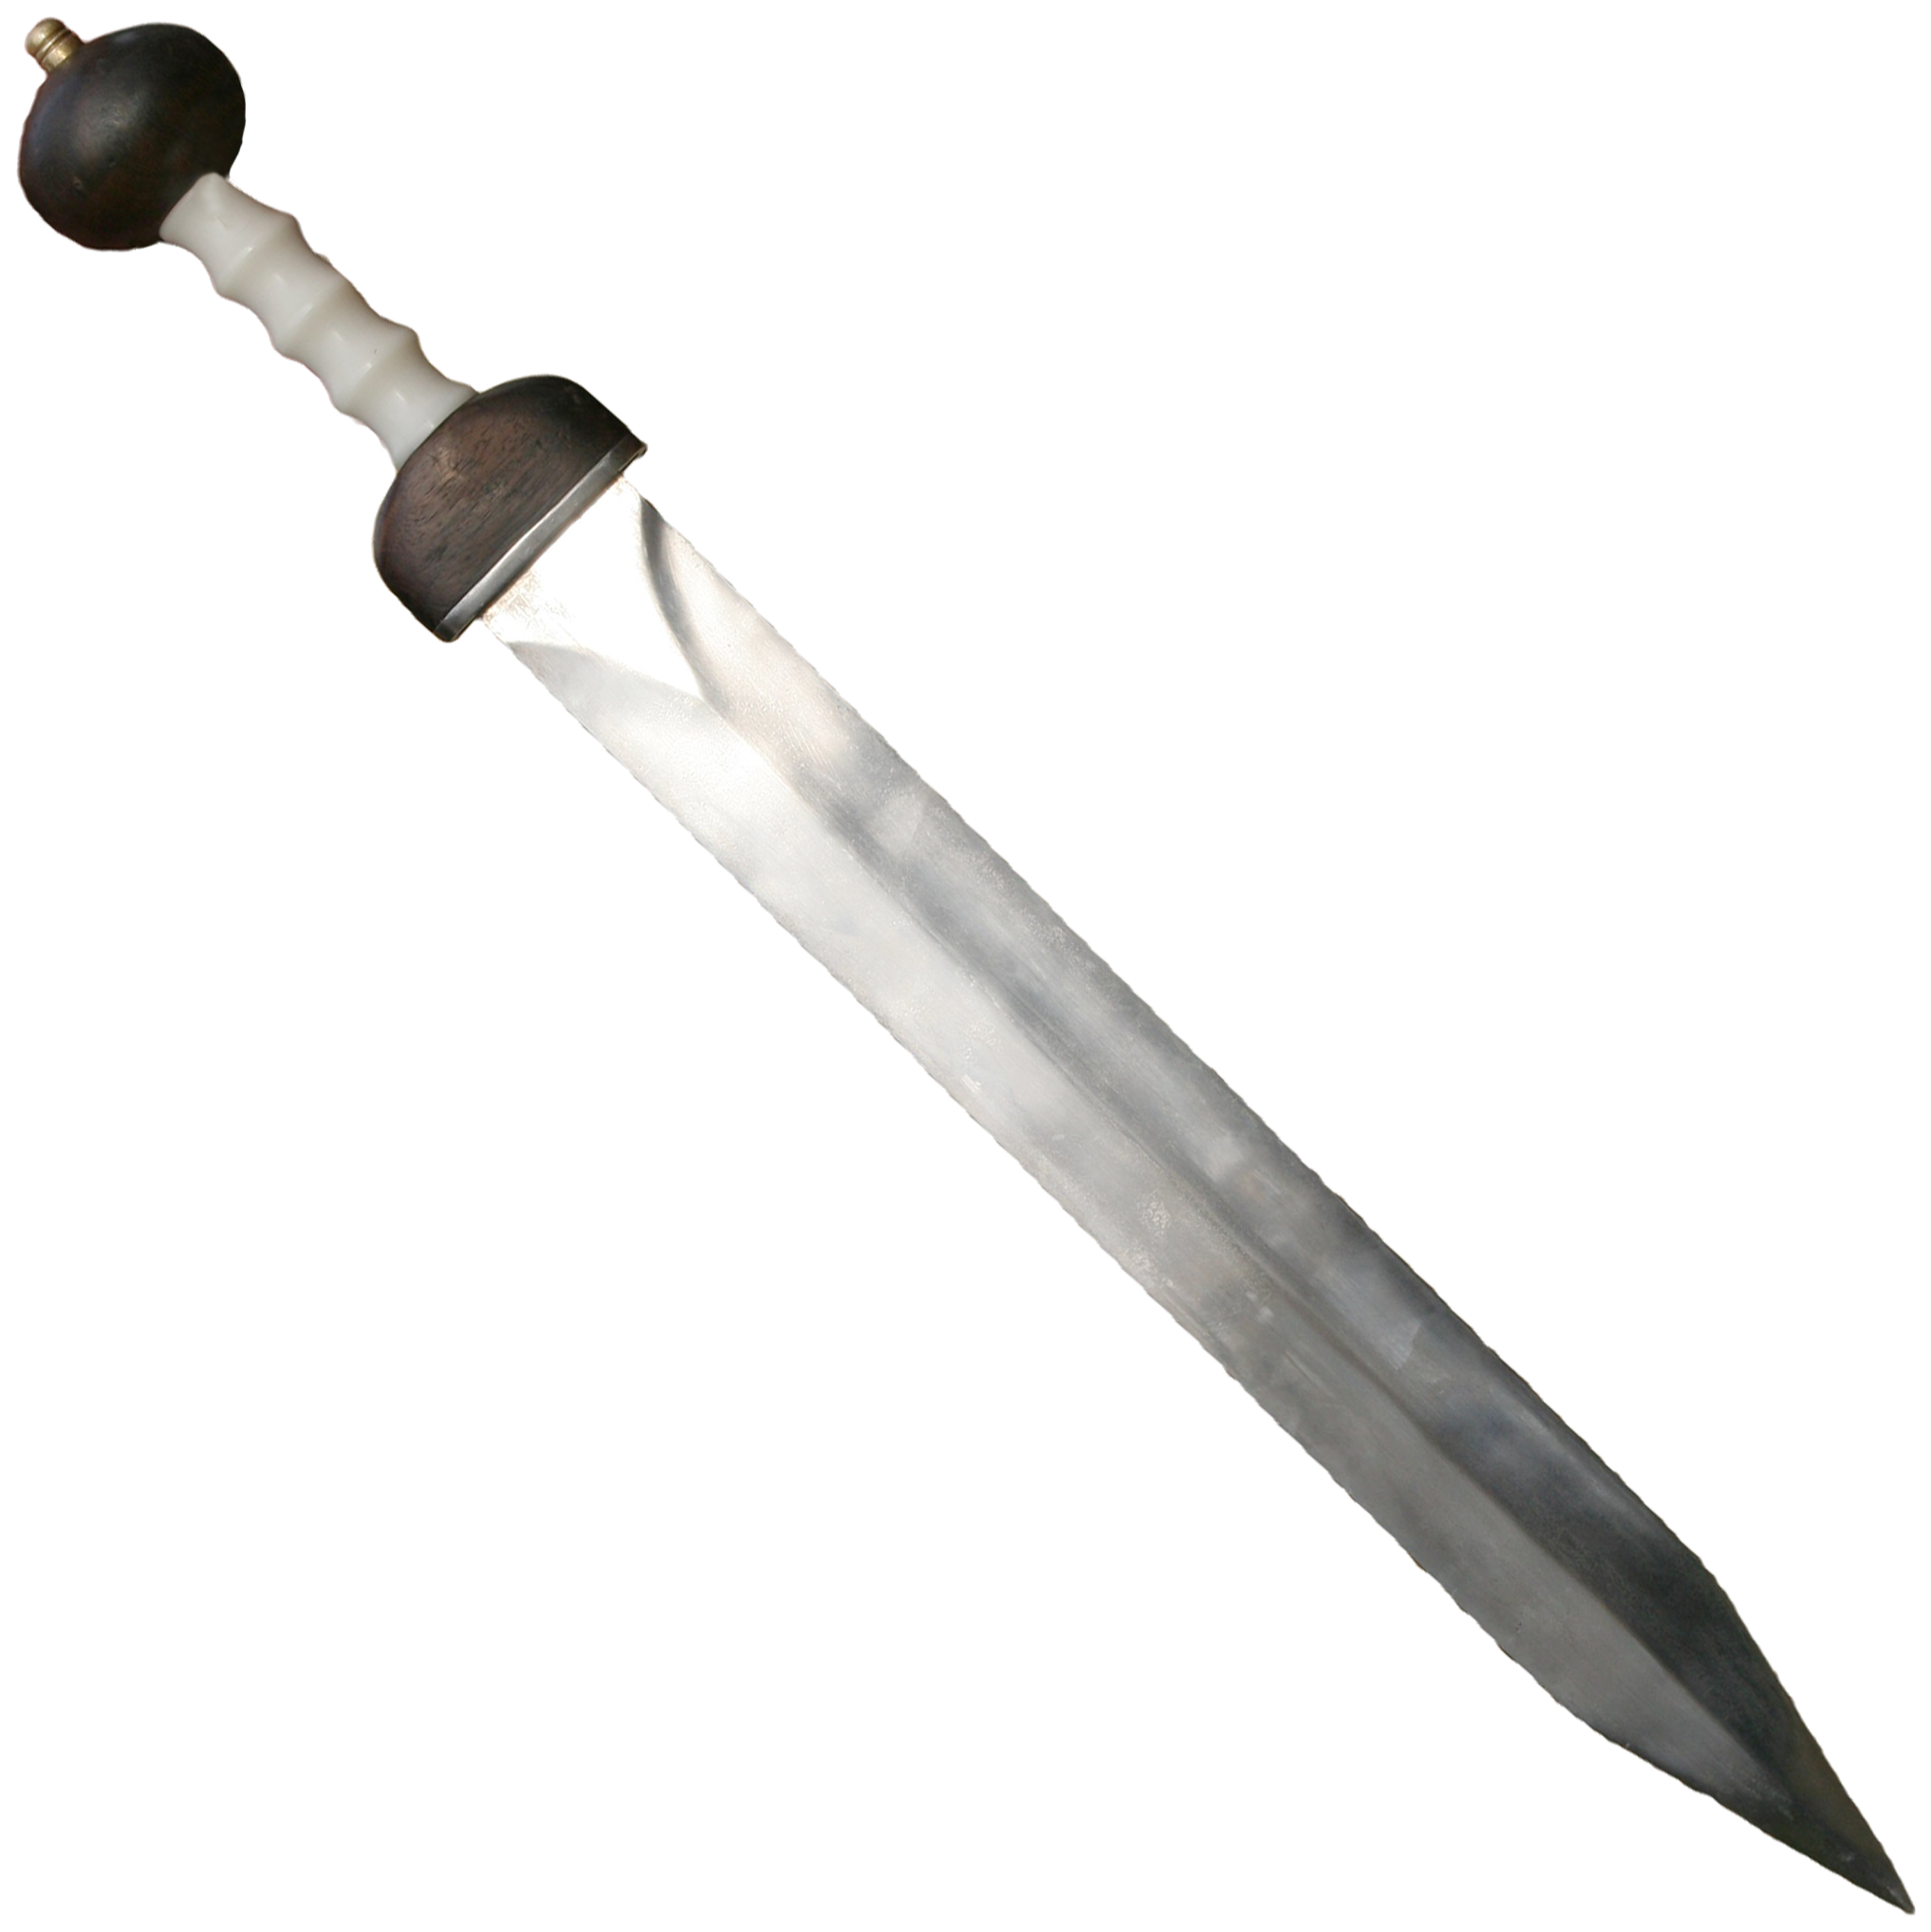 Gladiator Sword Transparent Background PNG Image